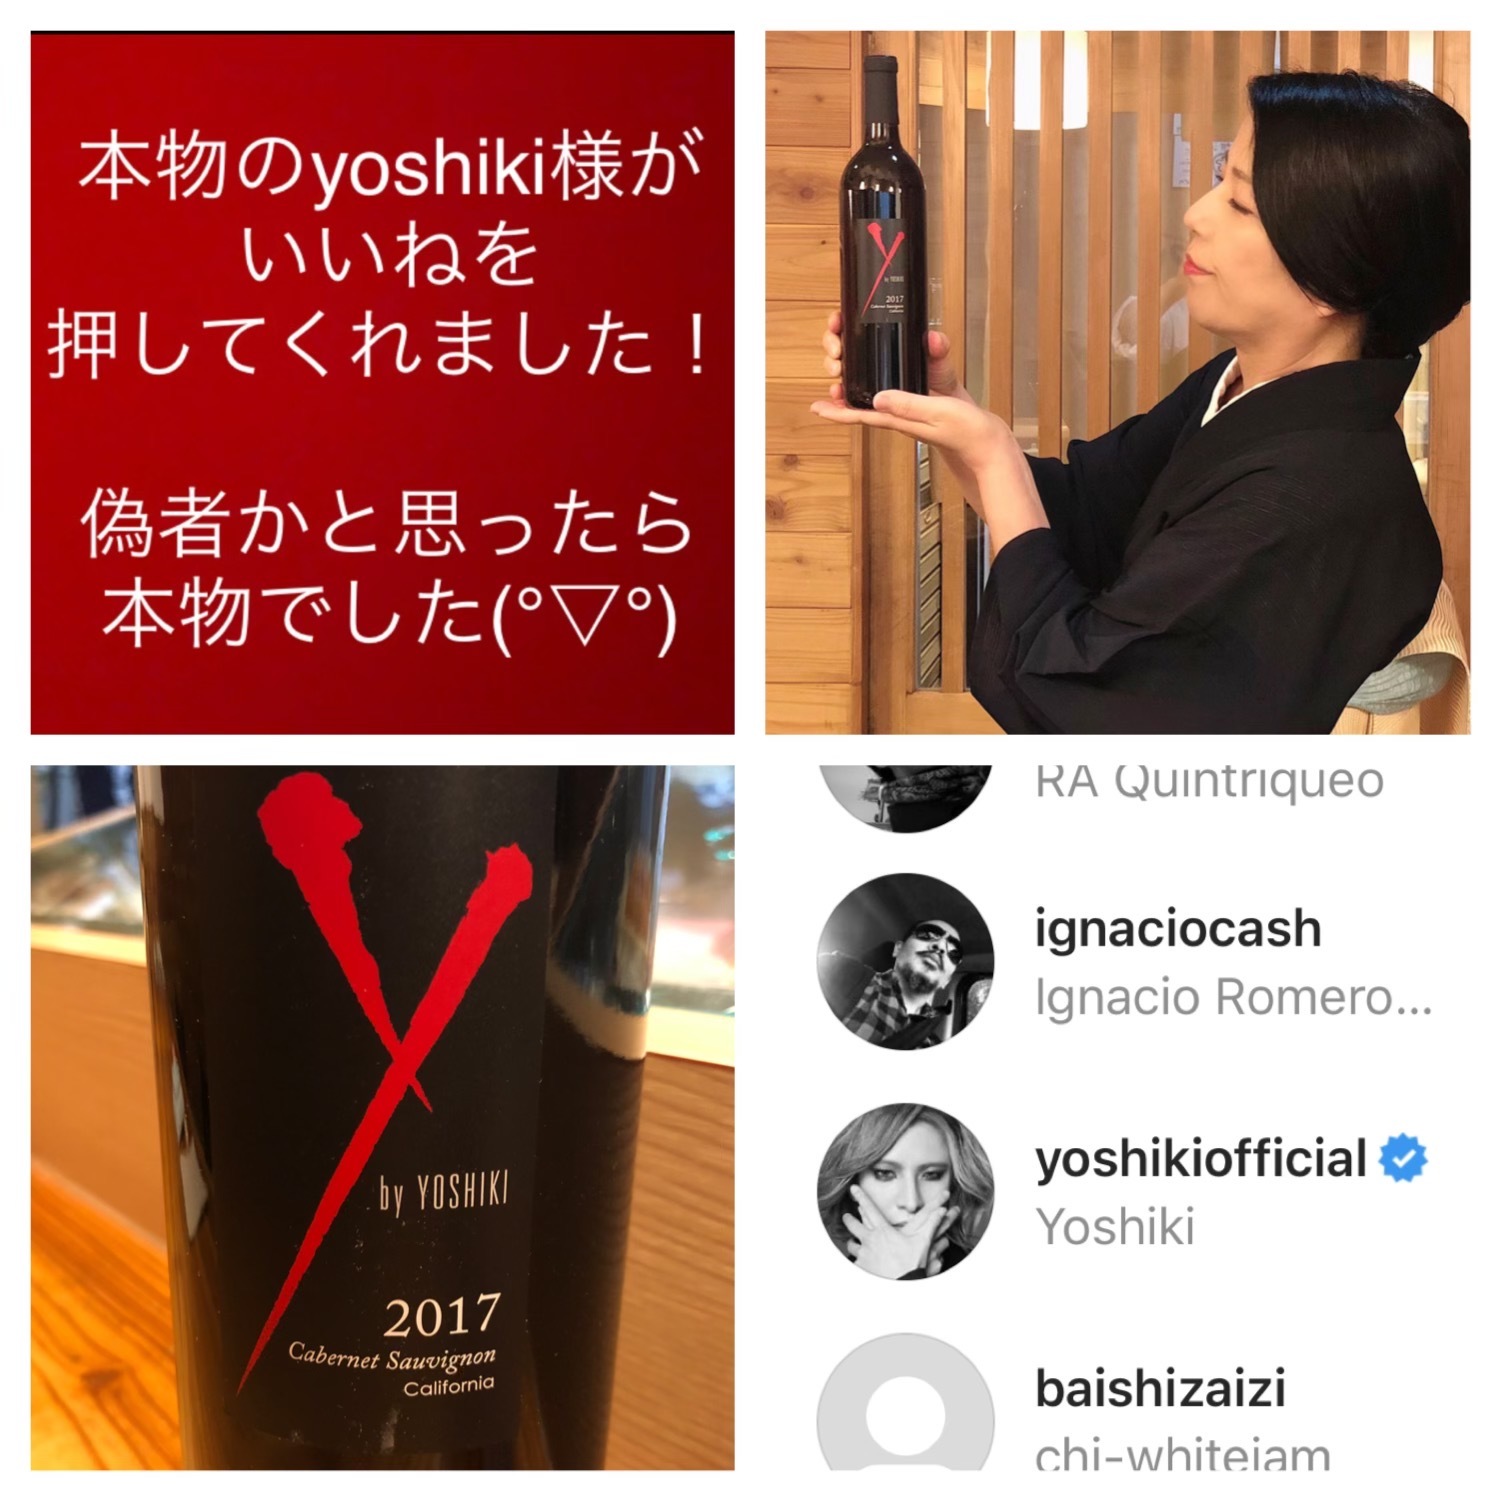 Xjapanのヨシキさんが Y By Yoshiki ワイン入荷 寿司屋のおかみさん小話